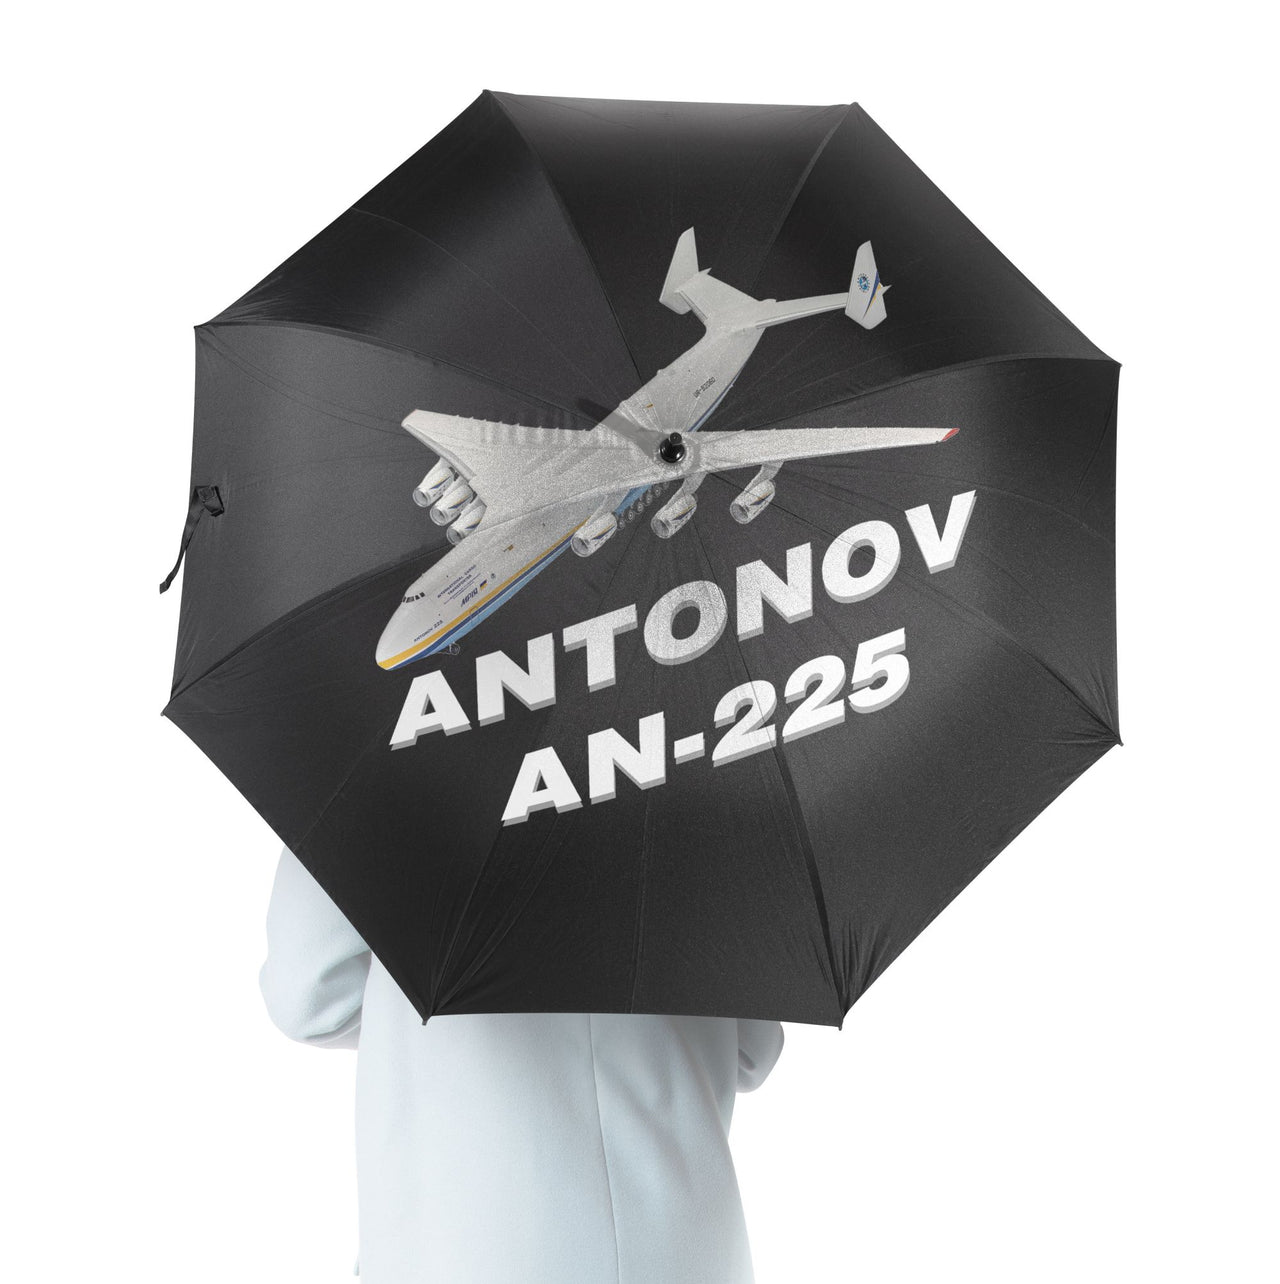 Antonov AN-225 (12) Designed Umbrella